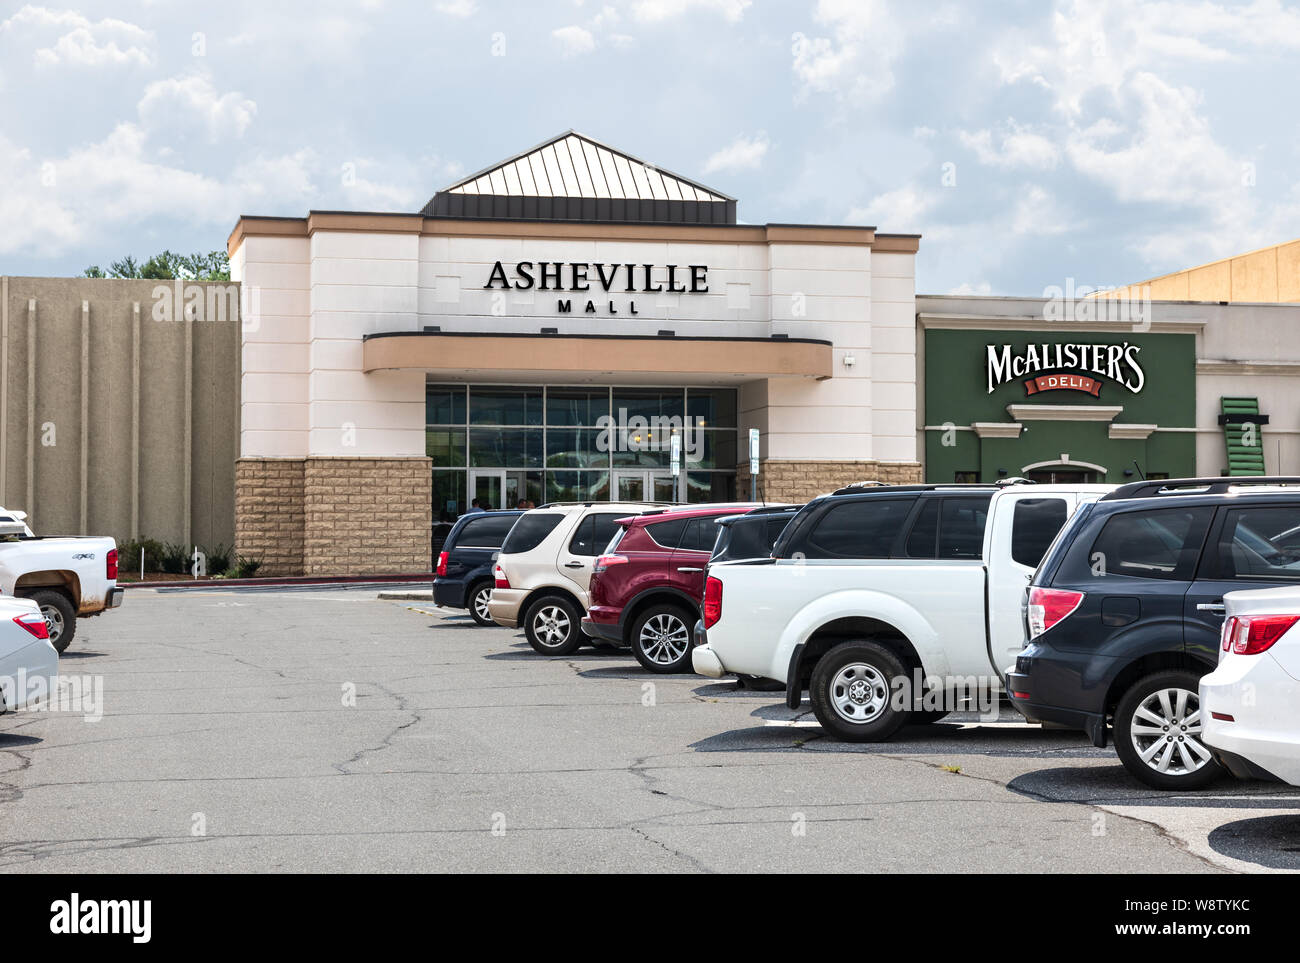 ASHEVILLE, NC, USA, 27 juillet 2019 : la principale porte d'entrée à l'Asheville Mall, montrant de stationnement et les voitures. Banque D'Images